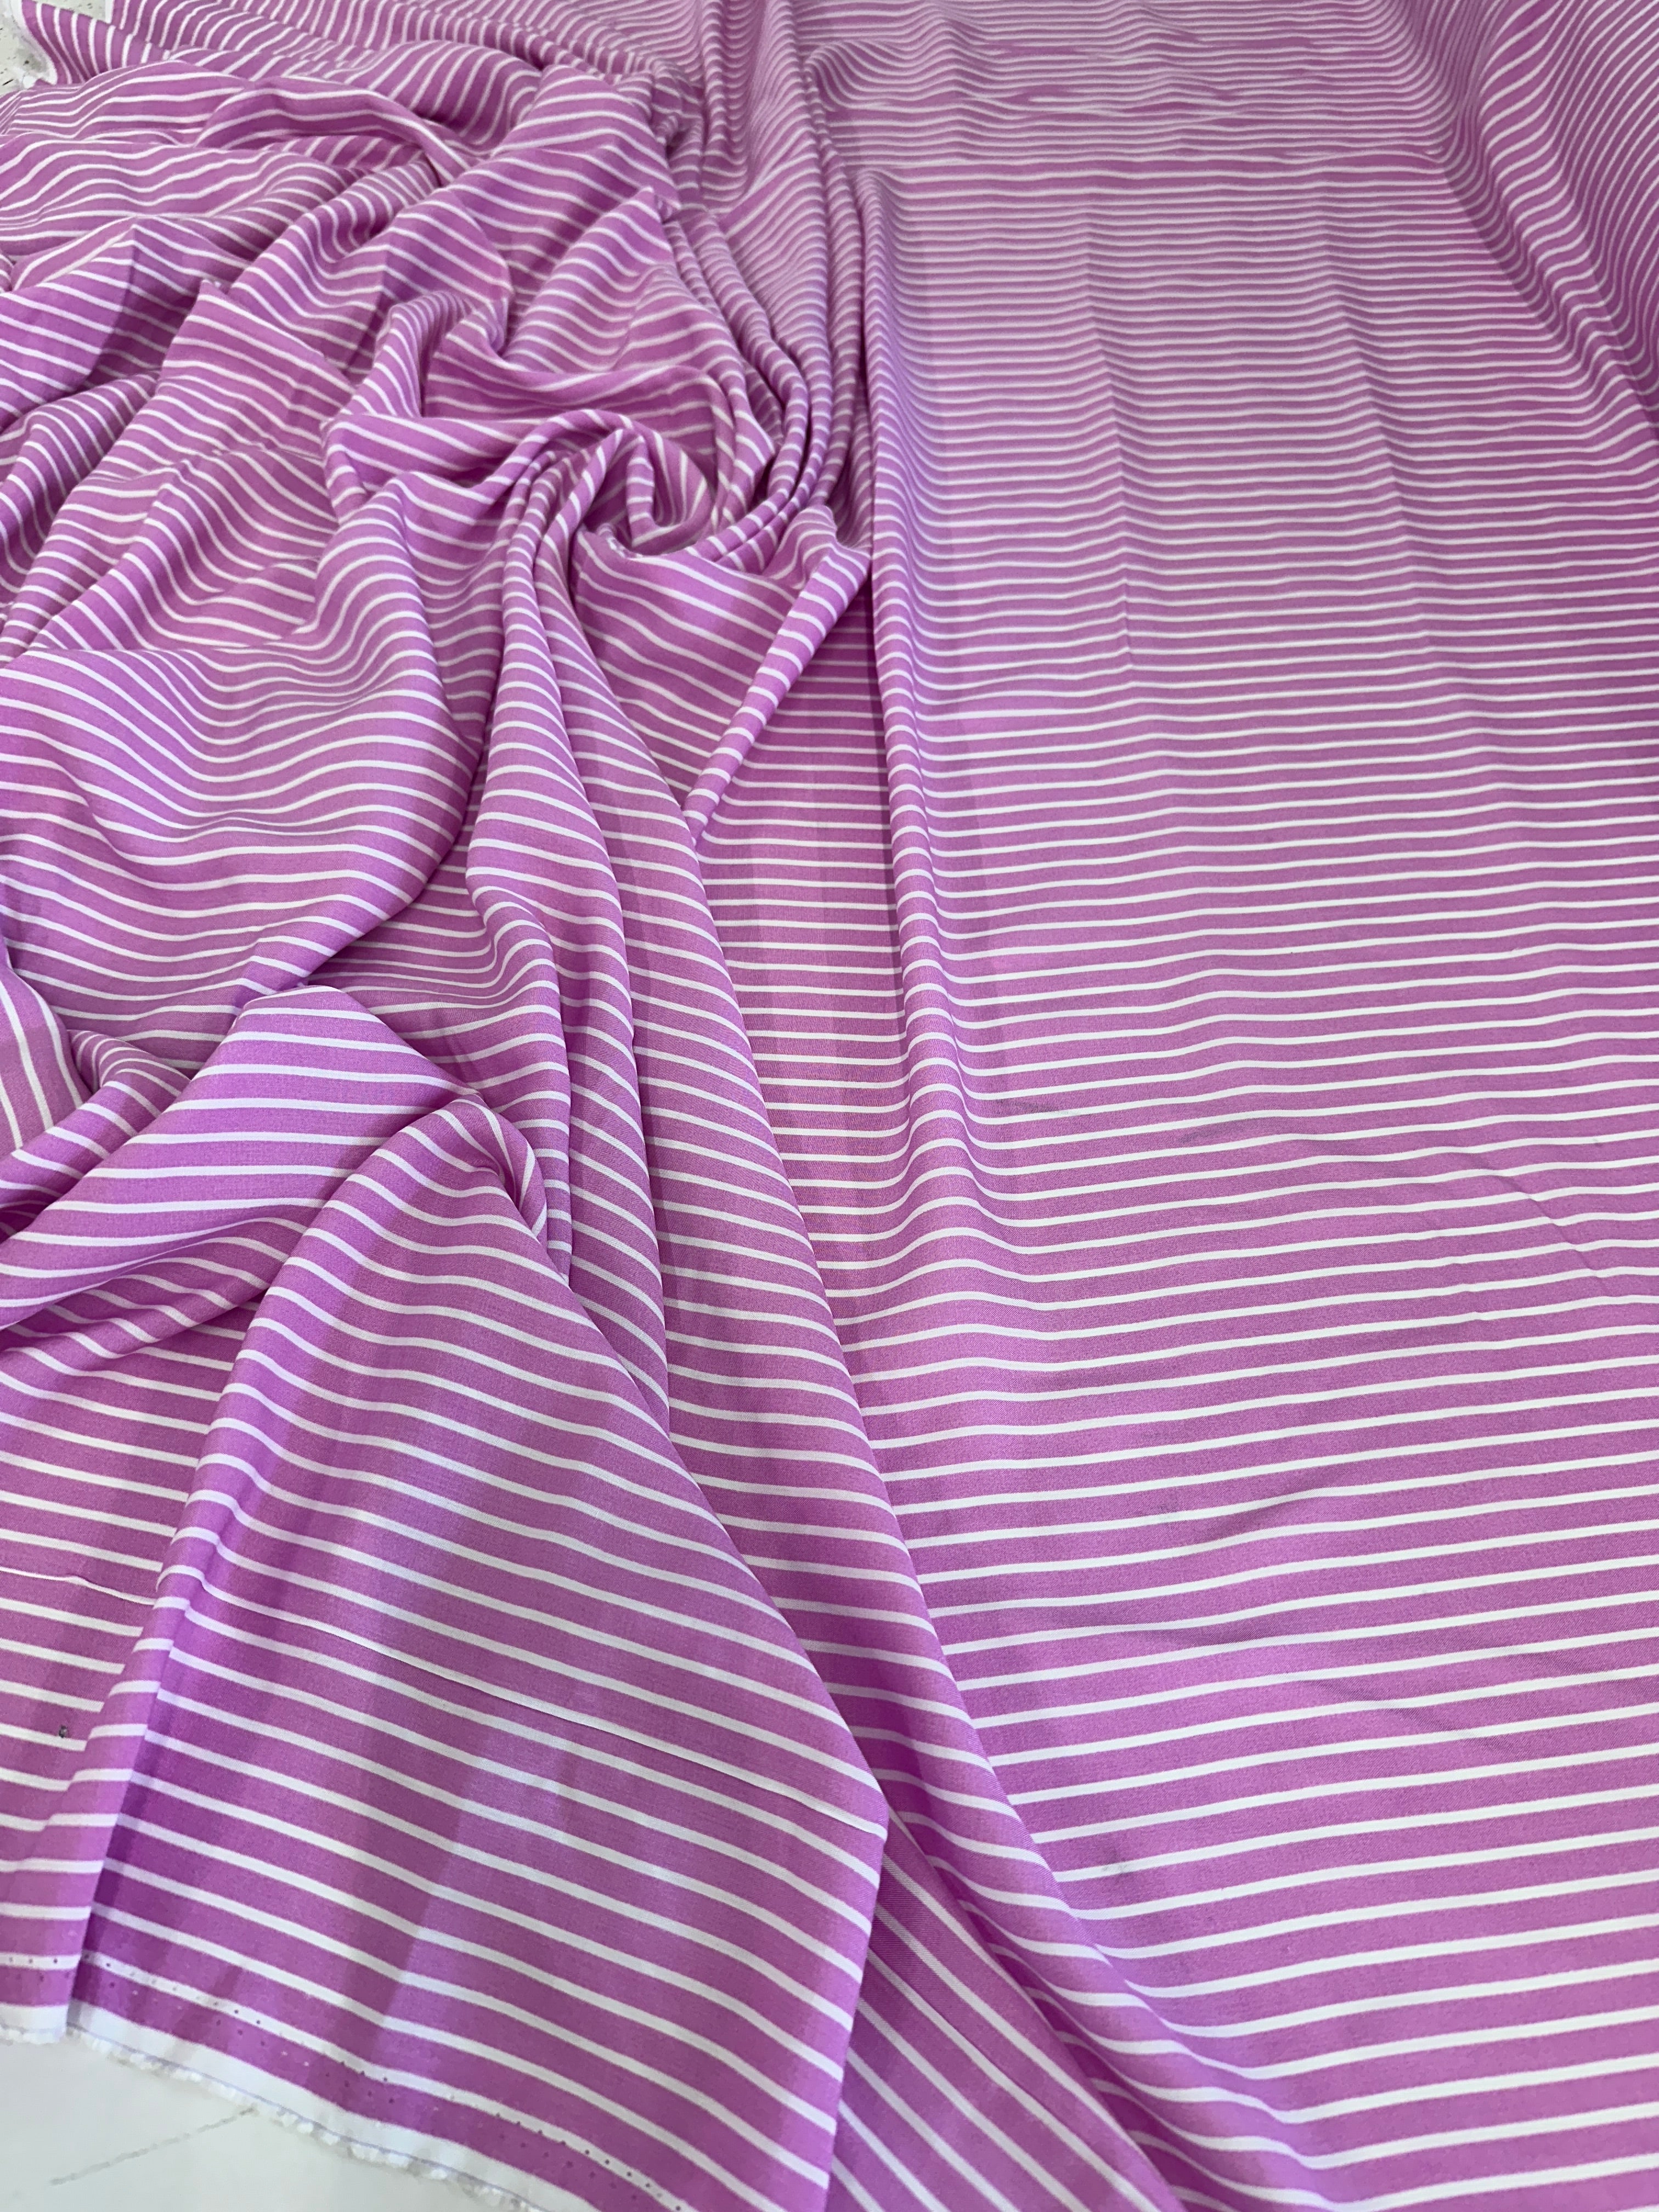 Pink White Stripped Cotton, online textile store, sewing, fabric store, sewing store, cheap fabric store, kiki textiles